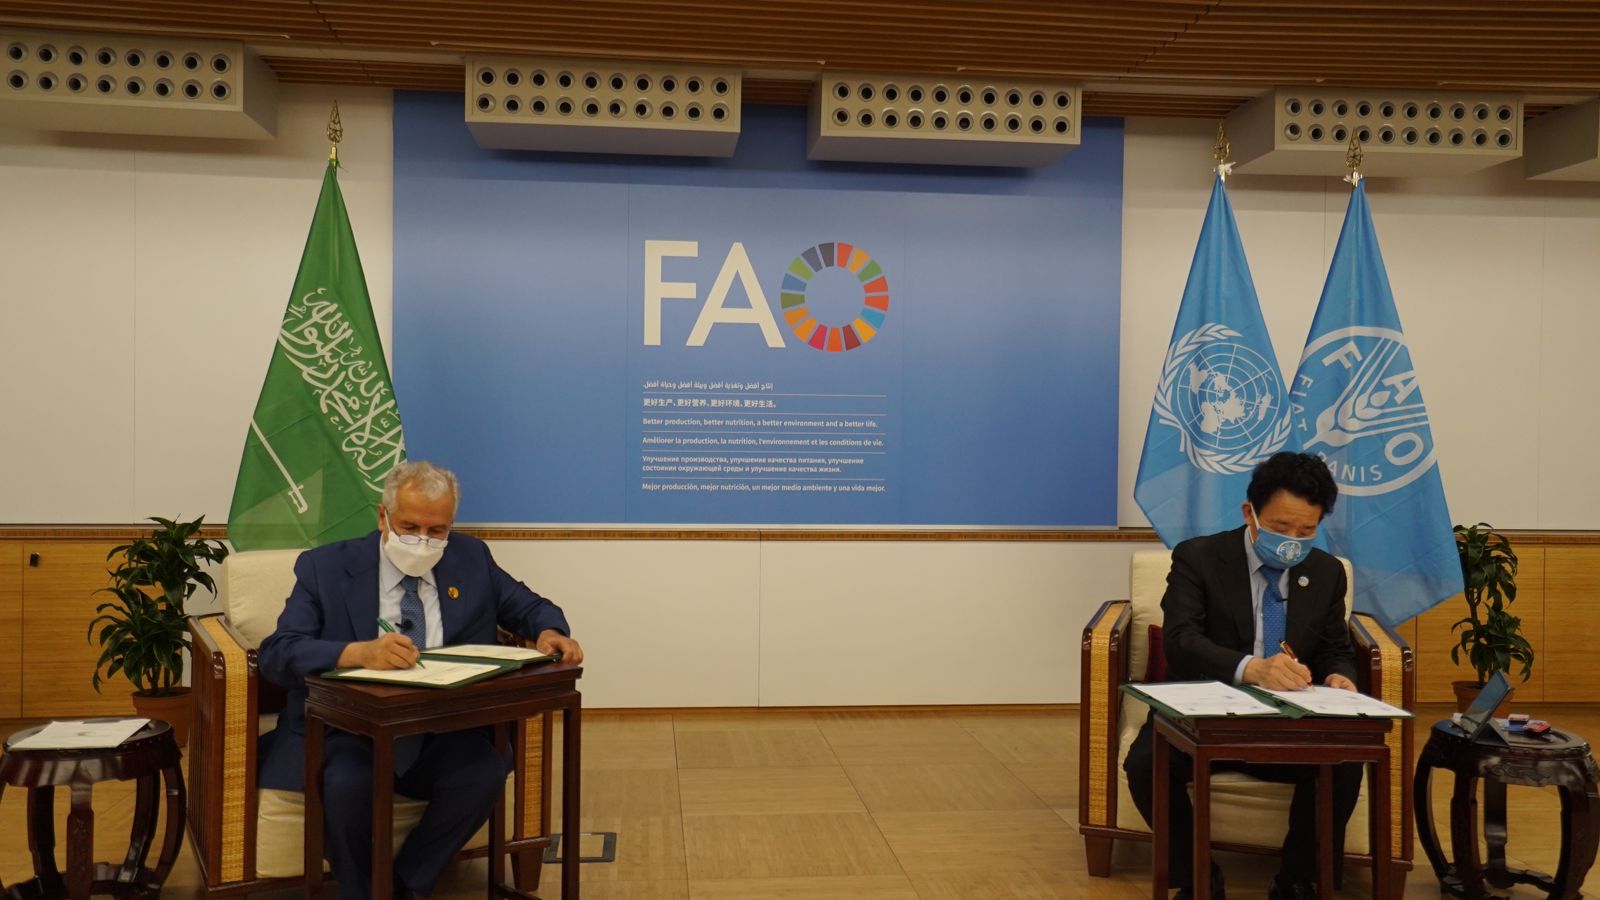 د. الربيعة يوقع اتفاقيتين مشتركتين مع منظمة الأغذية والزراعة للأمم المتحدة (الفاو) في روما